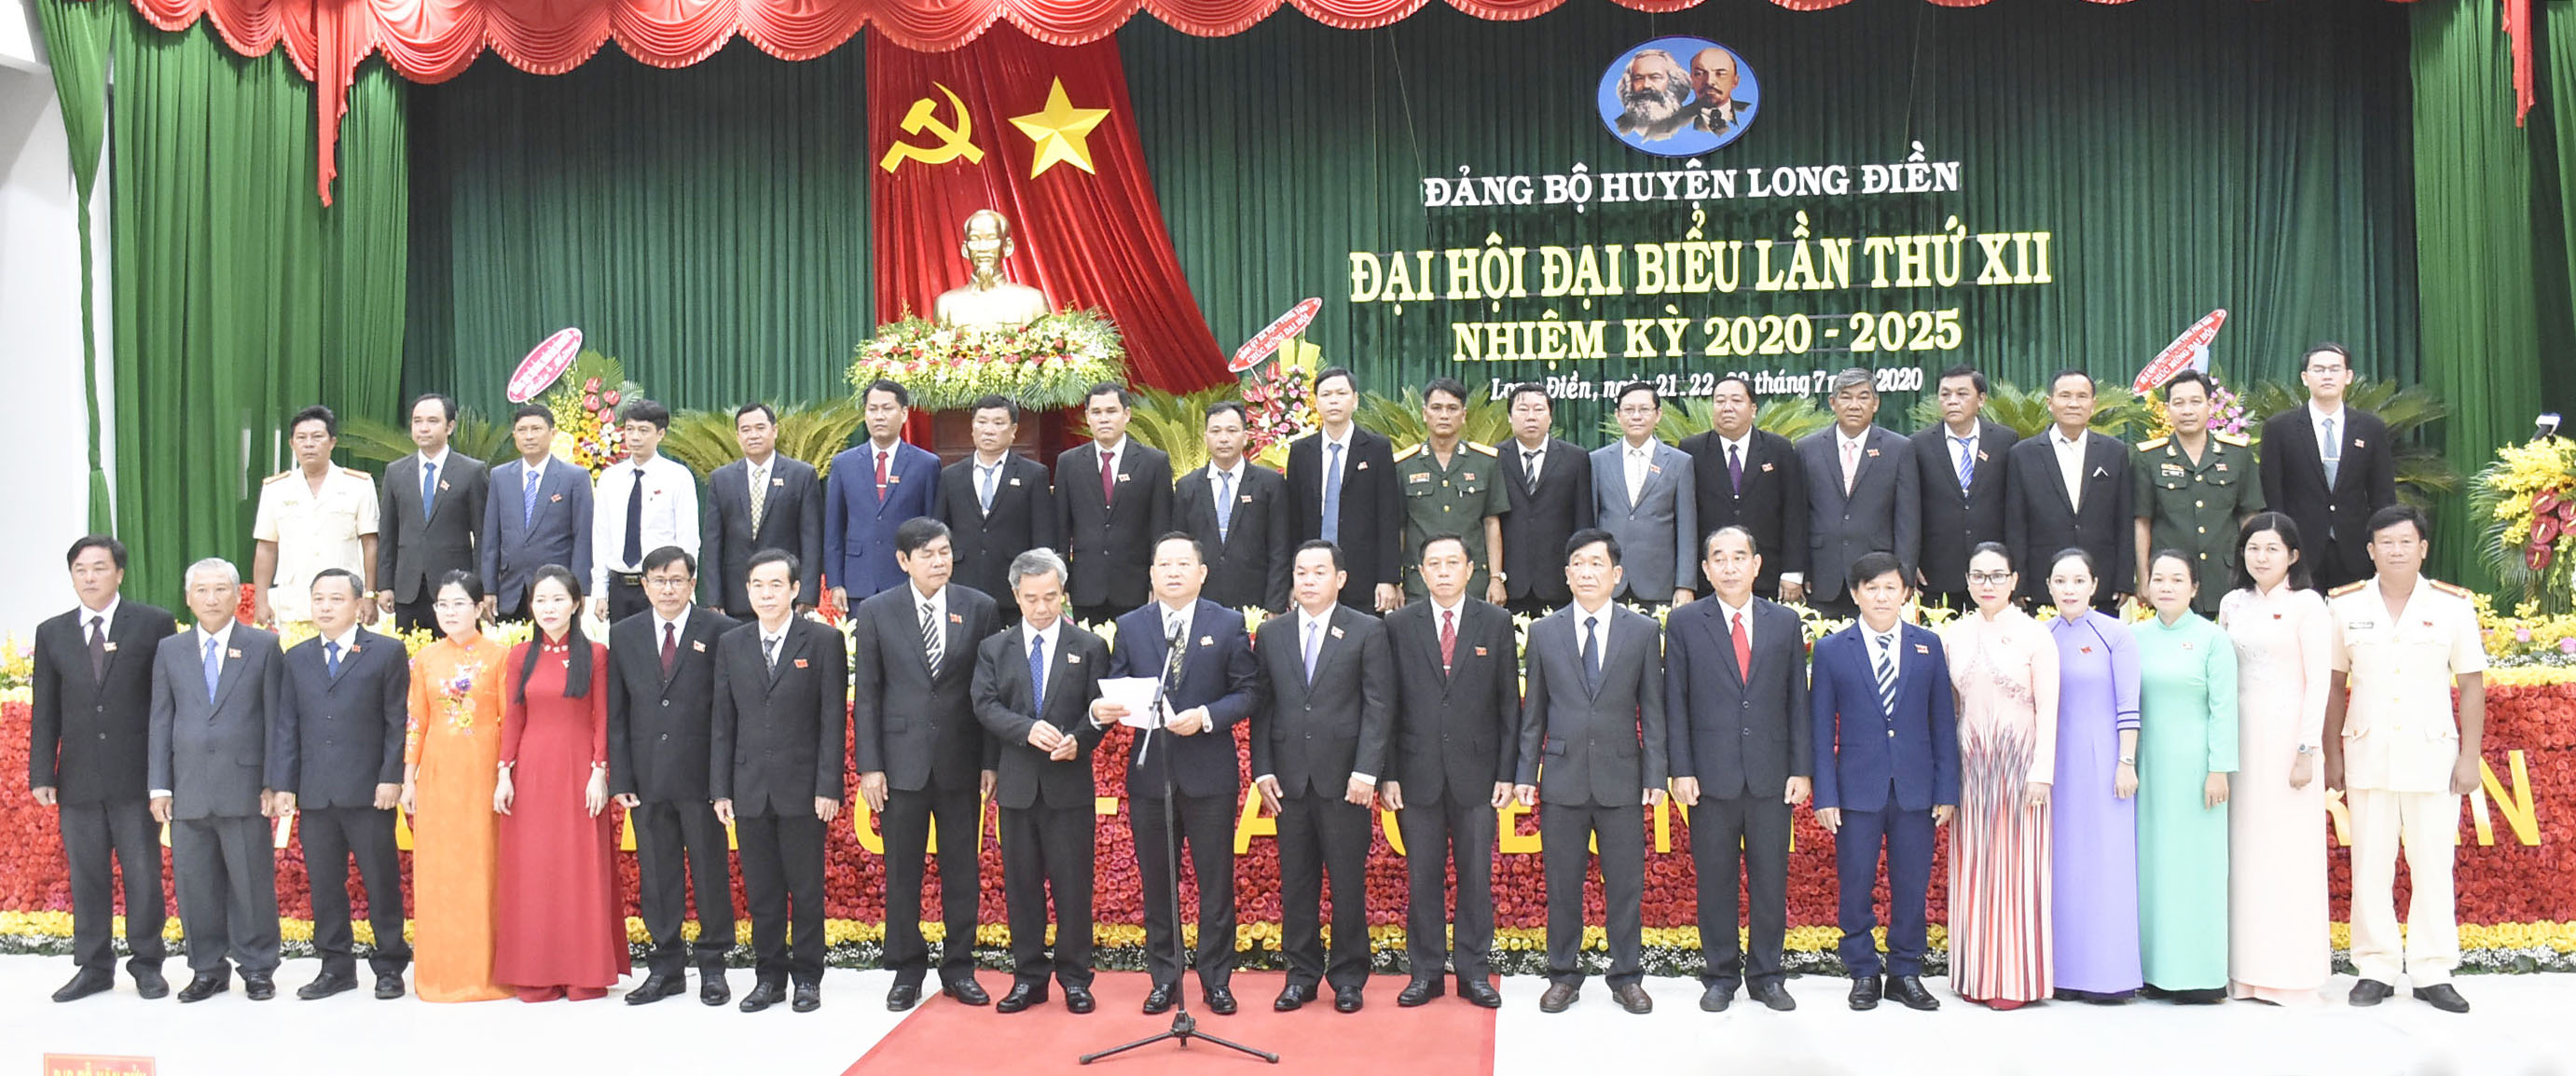 Các đồng chí trong BCH Đảng bộ huyện Long Điền nhiệm kỳ 2020-2025 ra mắt Đại hội.